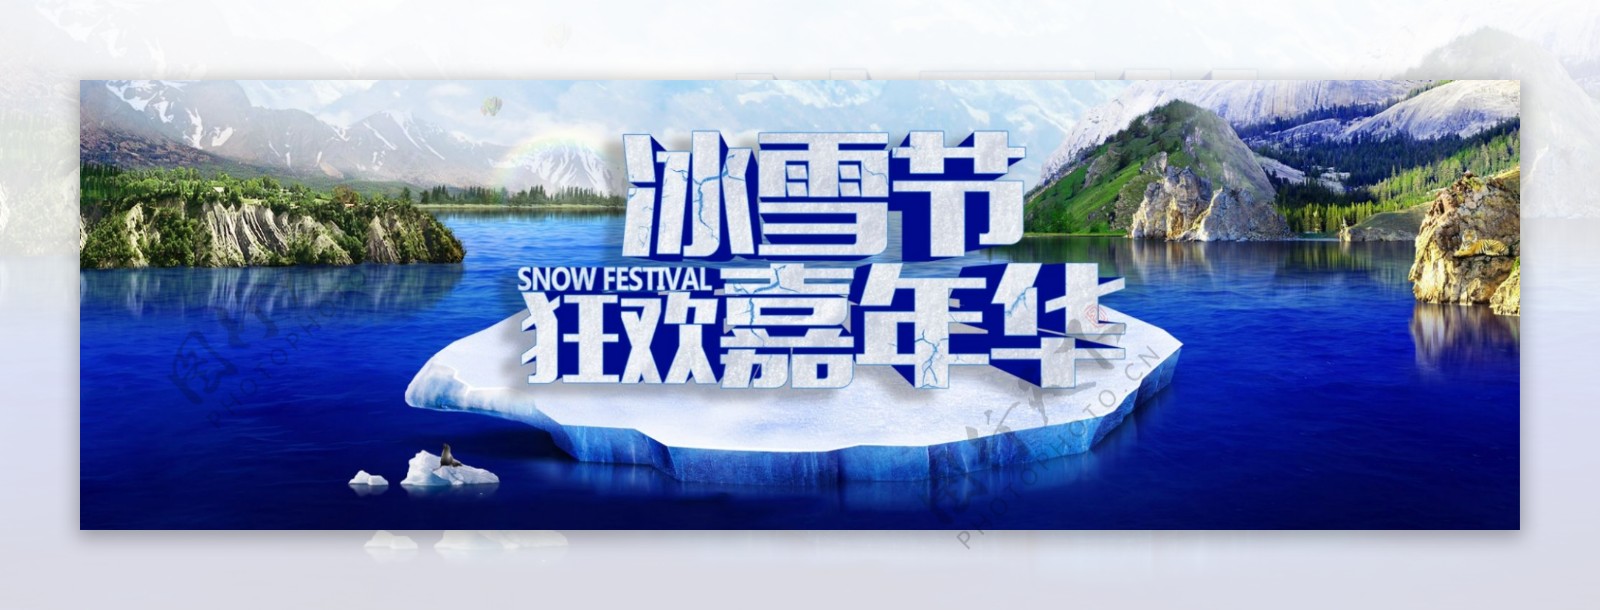 冰雪节banner